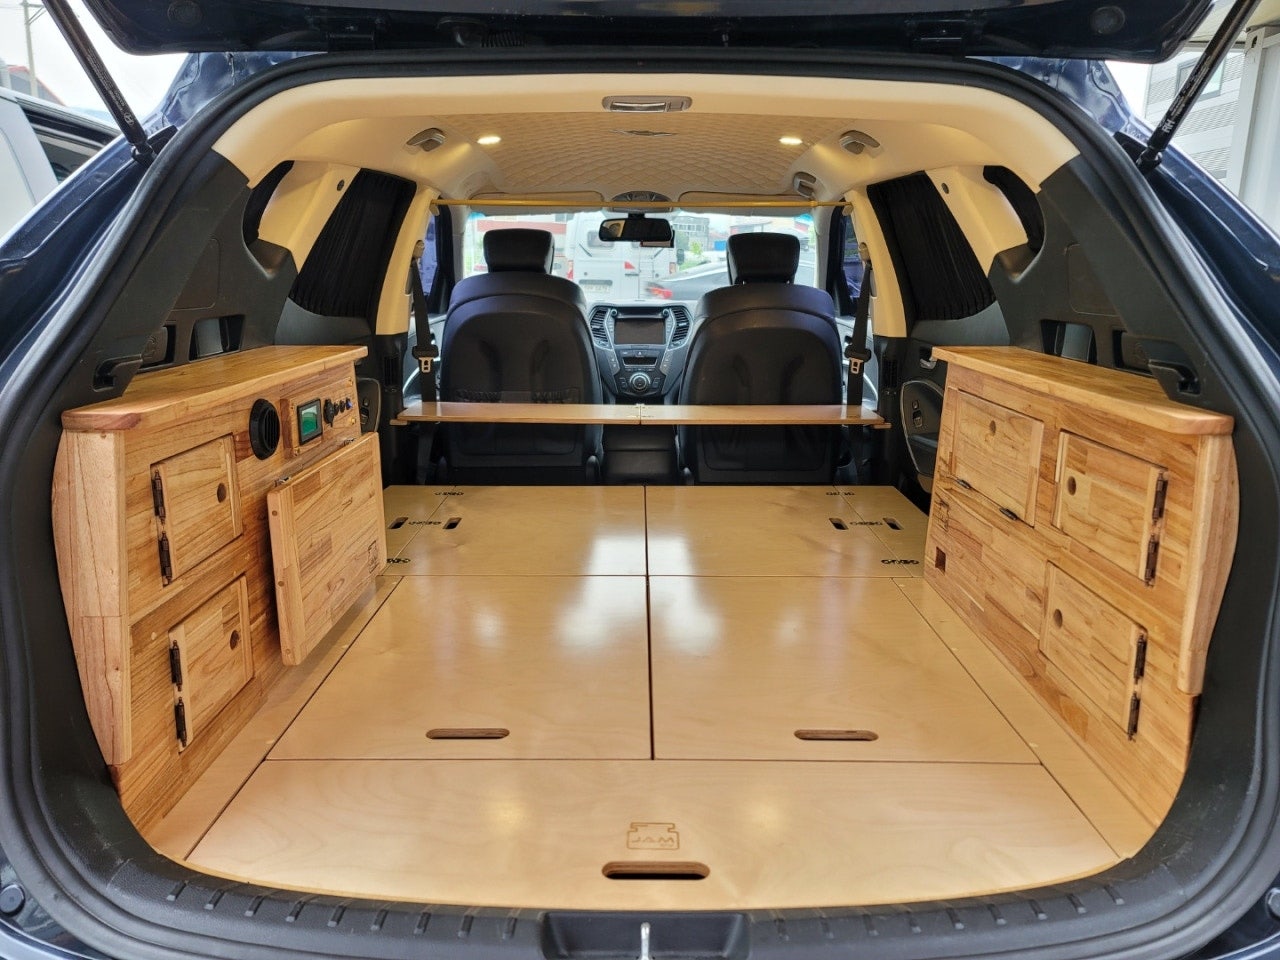 잼캠핑카 JAMRV 에서 제작한 SUV캠핑카